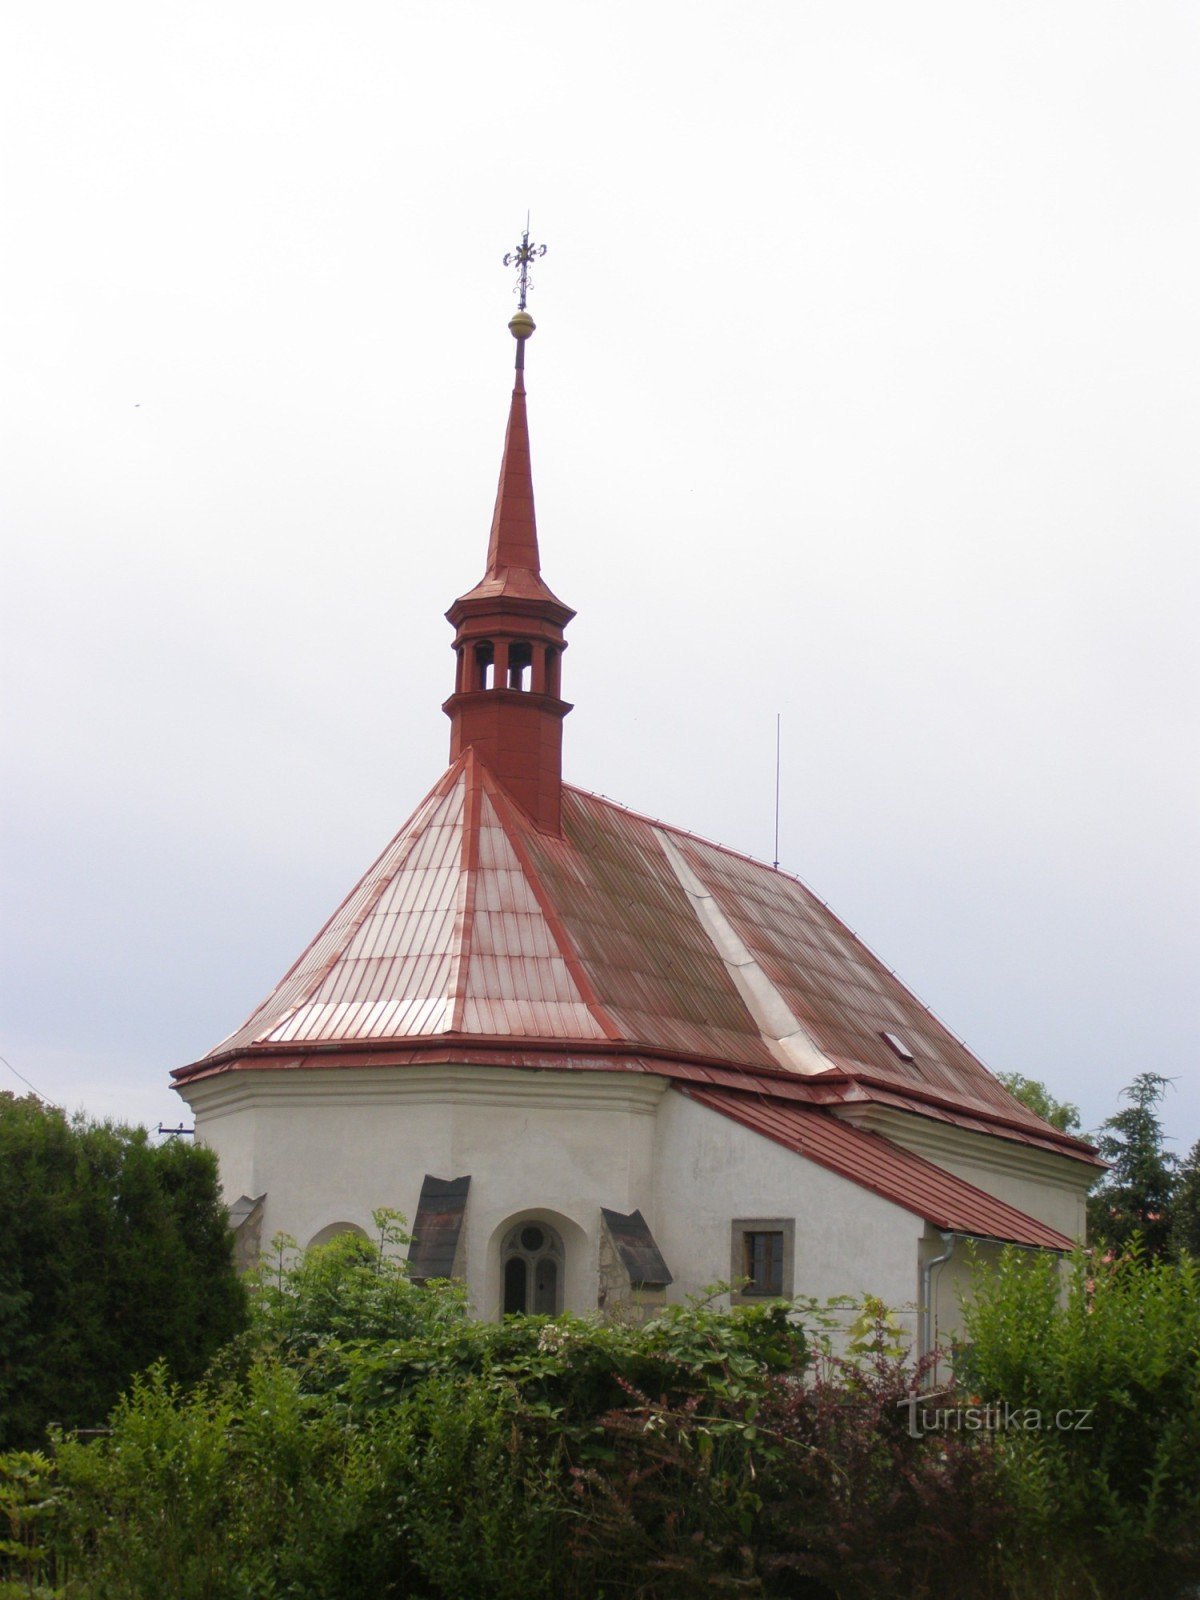 Младейов - церковь Св. Гильи с колокольней